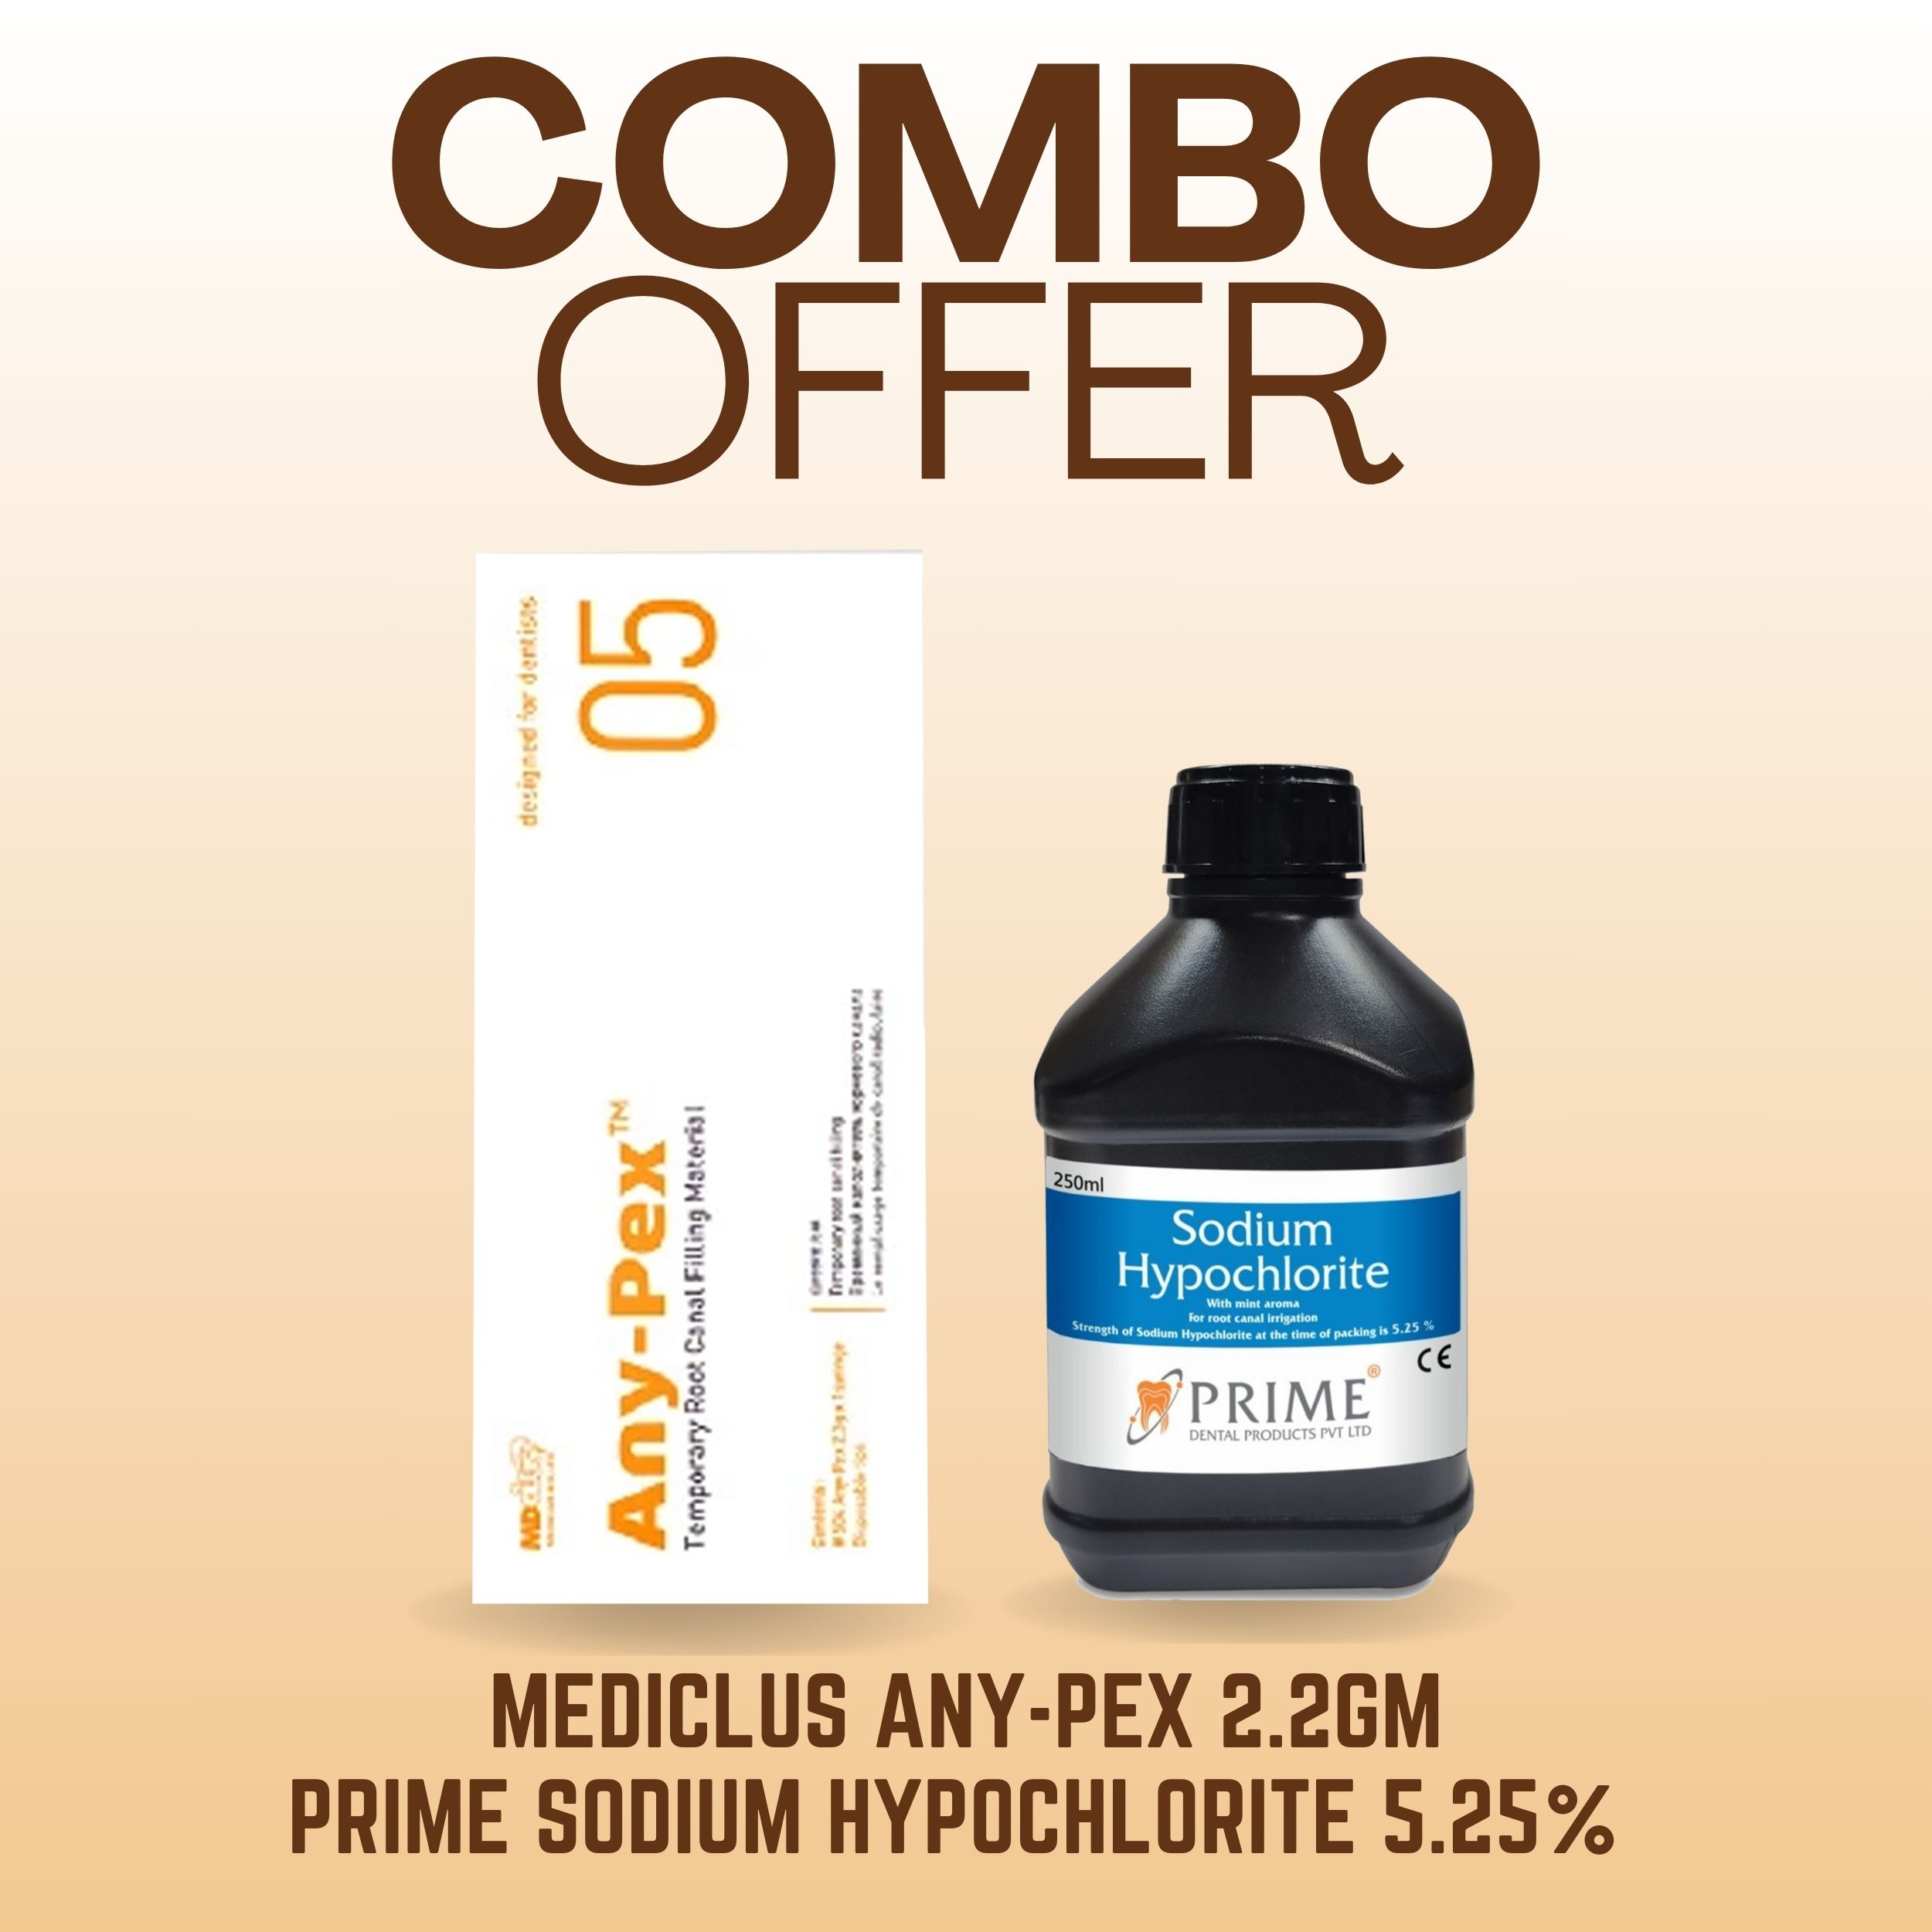 Mediclus Any-Pex 2.2gm (Expiry 07-09-2024) + Prime Sodium Hypochlorite 5.25% 250ml